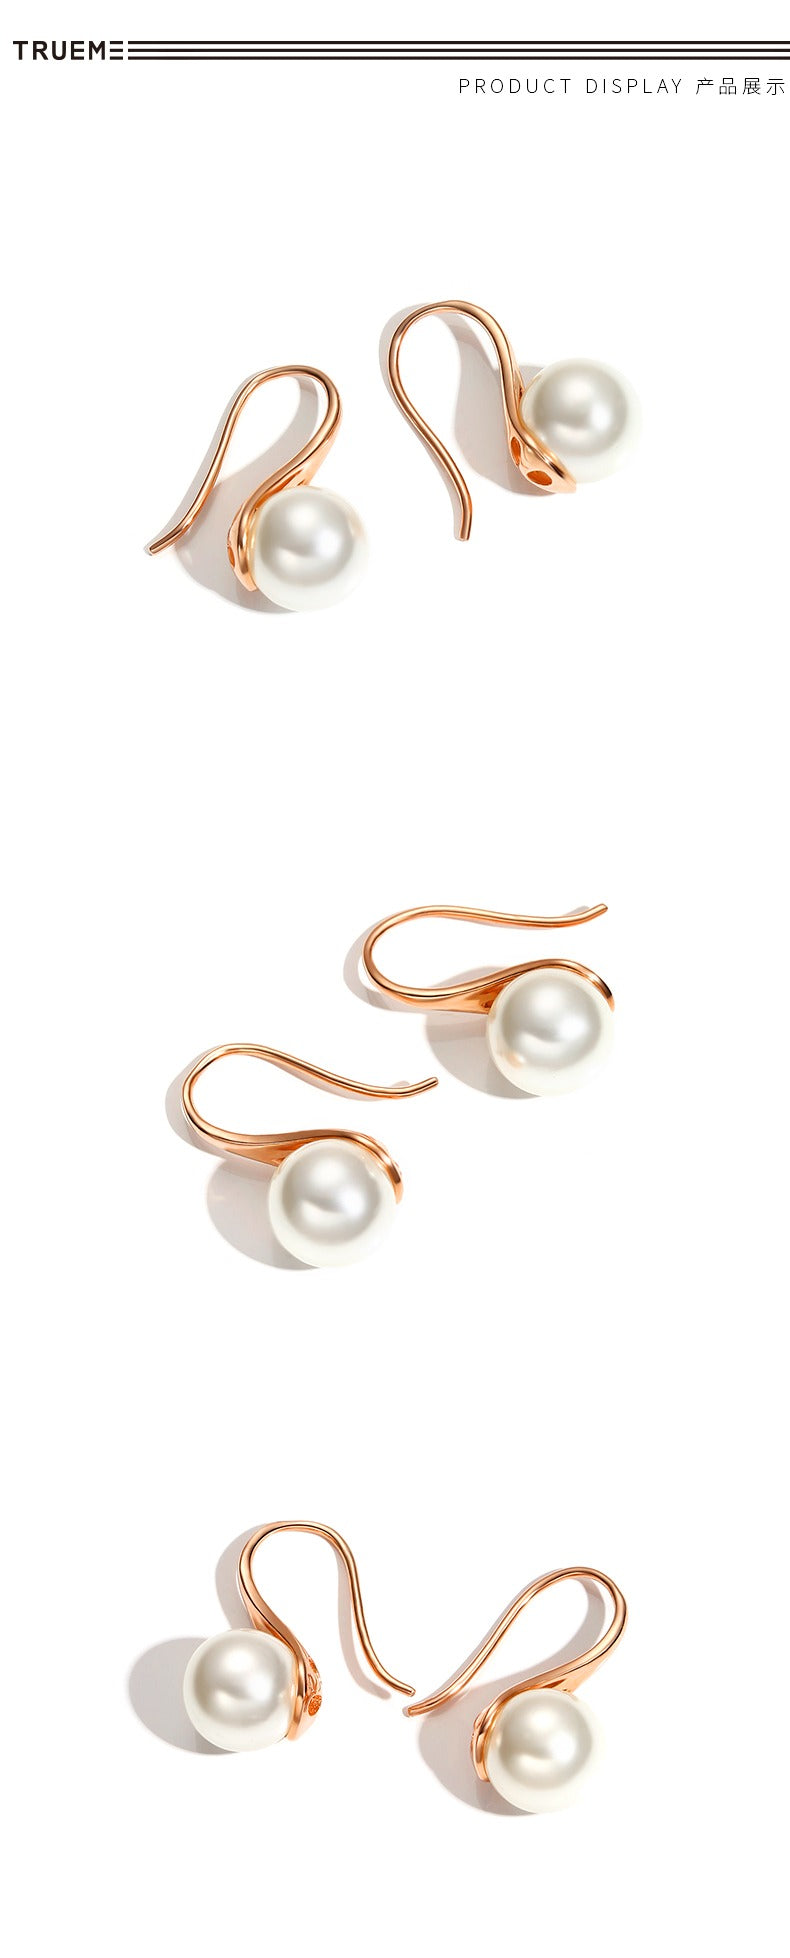 La Perla 925 Silver Pearl Earrings by Notteluna